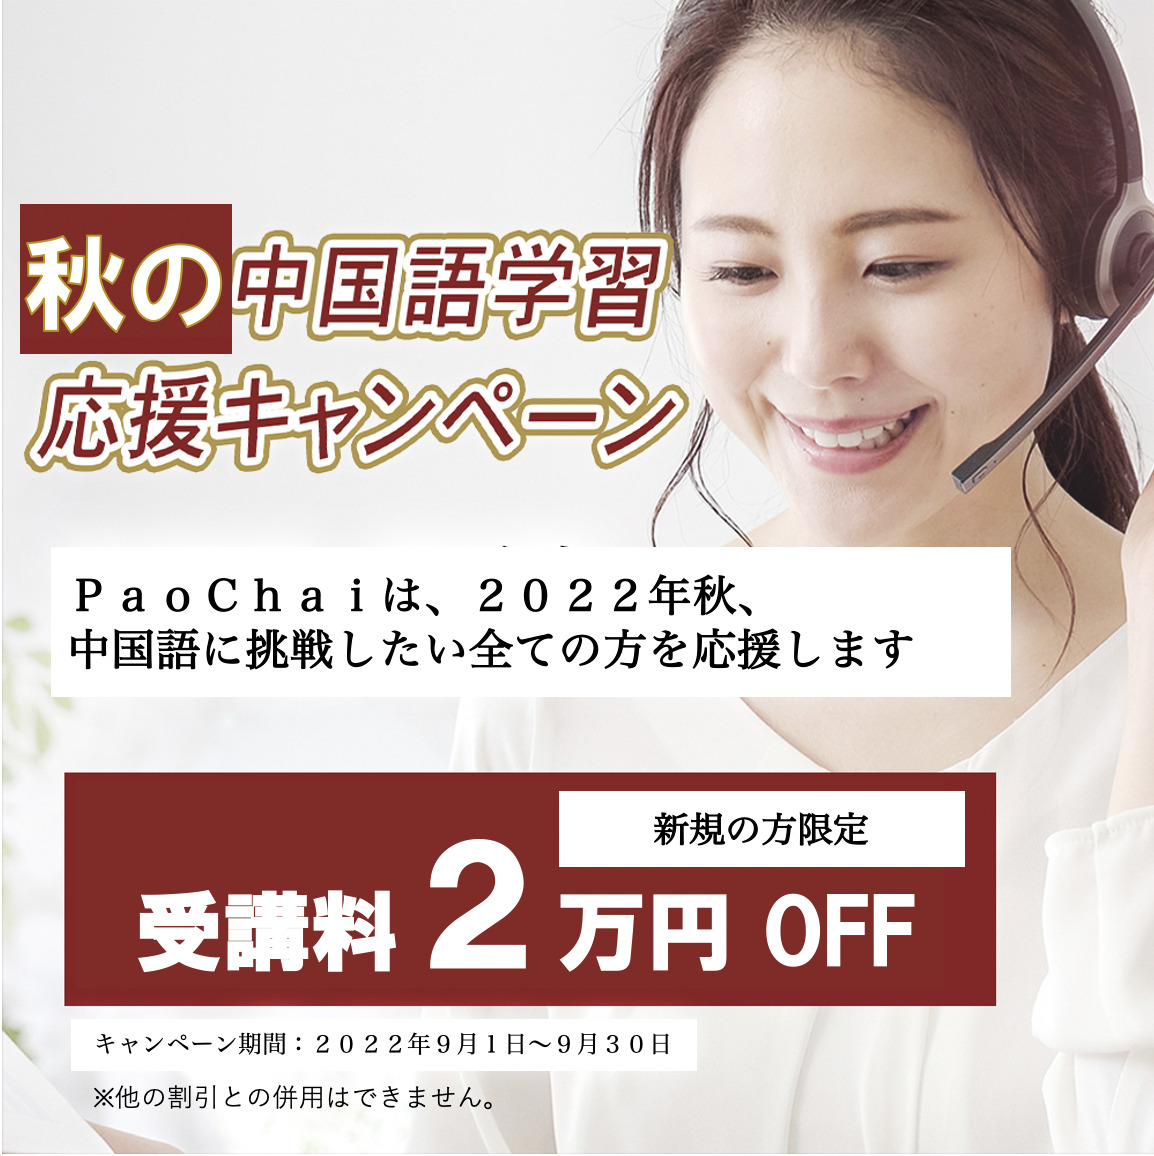 paochai_campaign_02.jpg